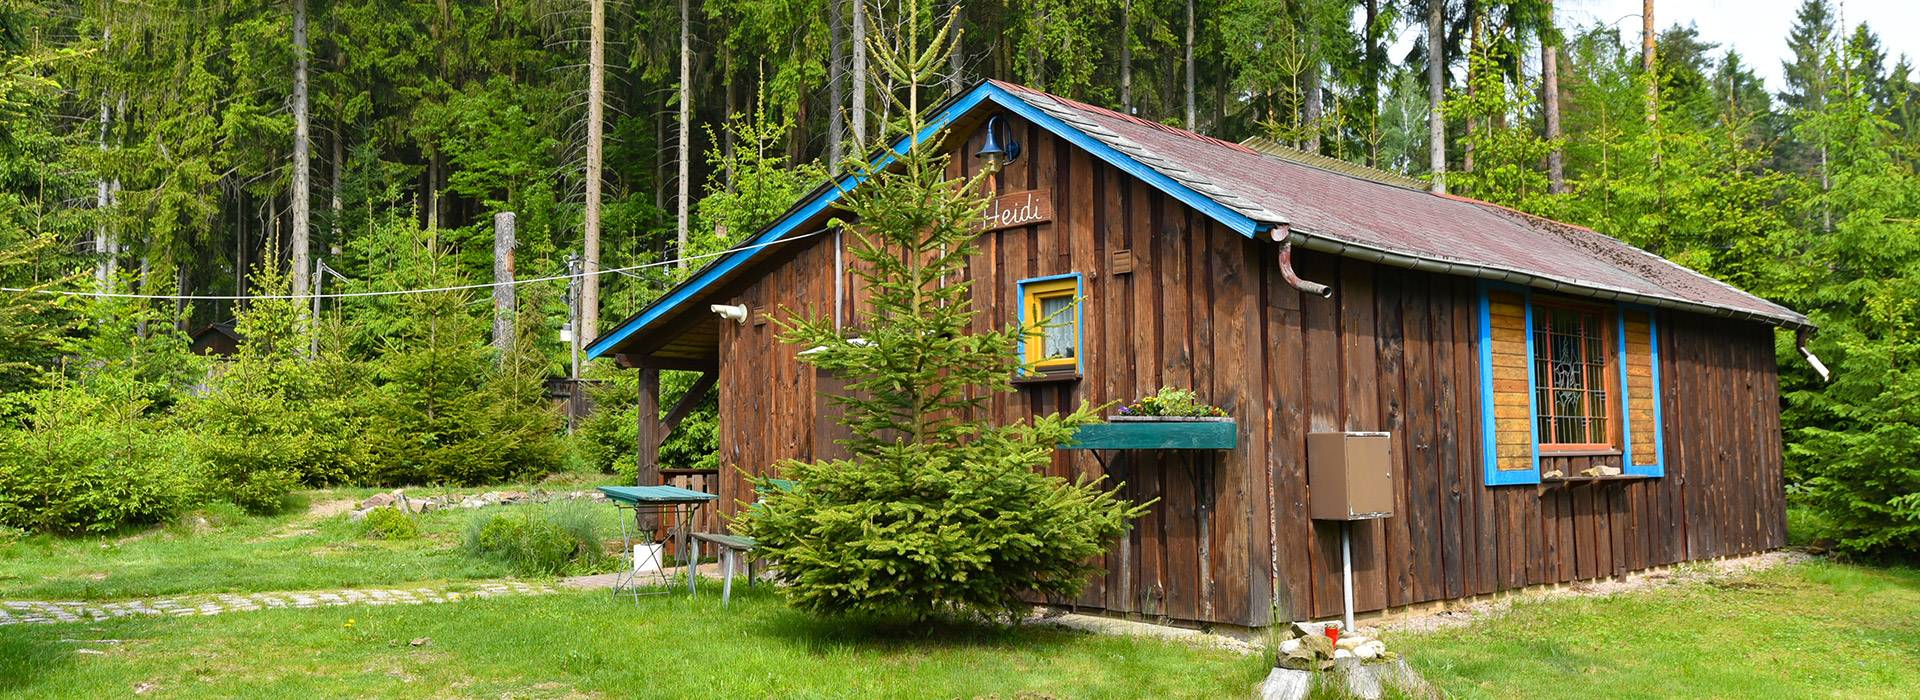 Ferienhaus Heidi - Feriendorf Vogtland - Urlaub direkt im Wald